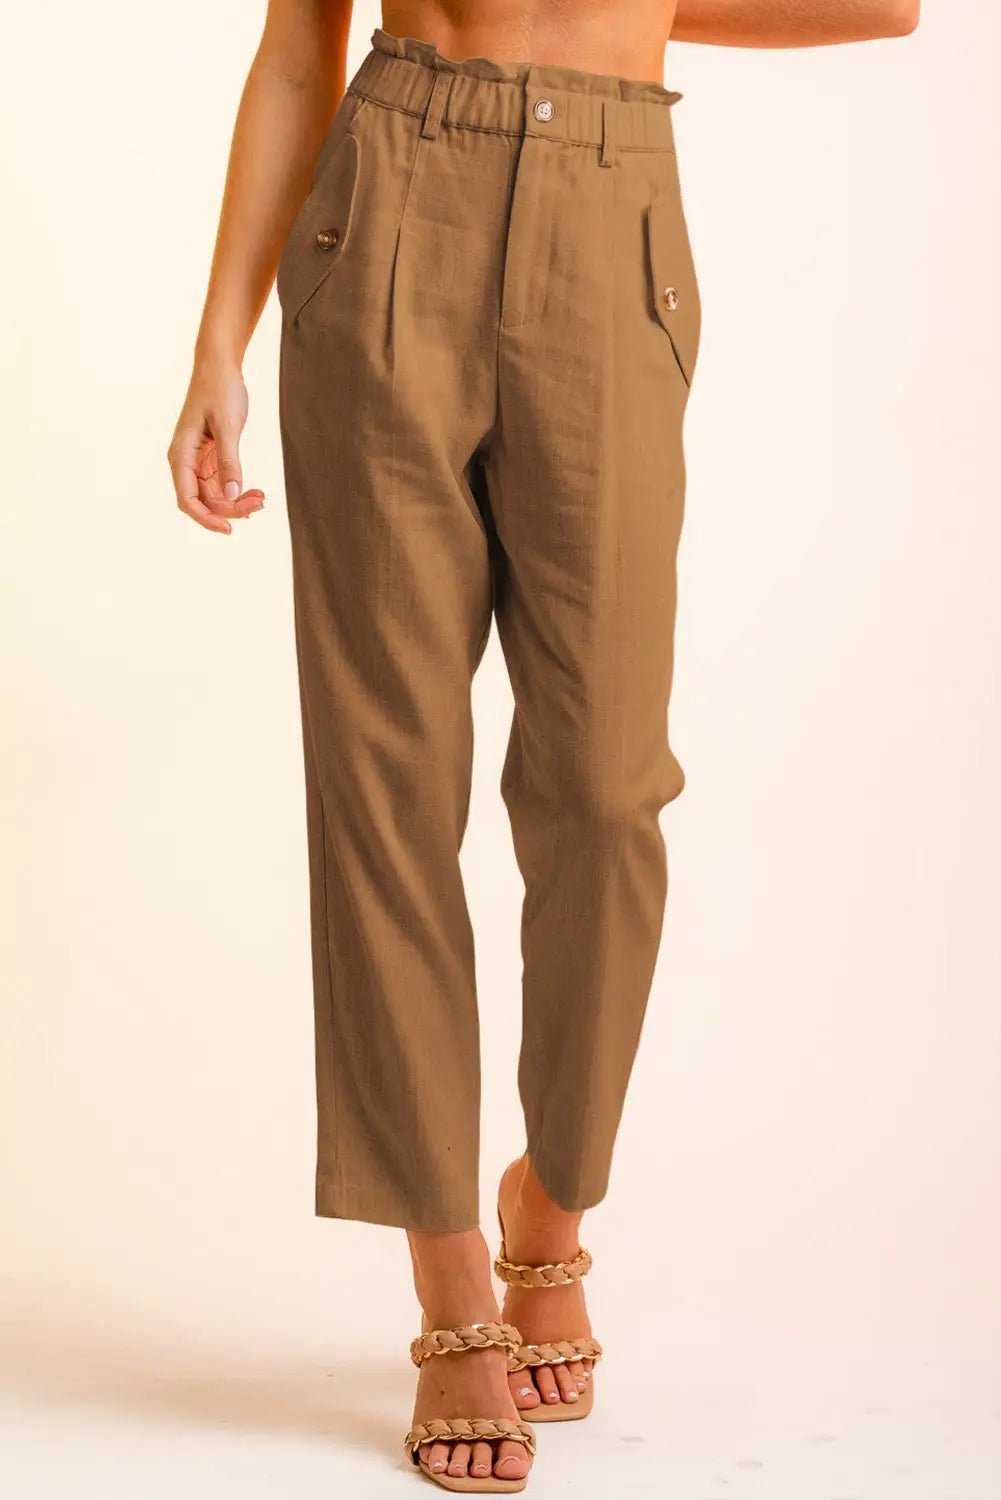 Brown button flap pocket high waisted linen pants - s / 80% viscose + 20% linen - straight